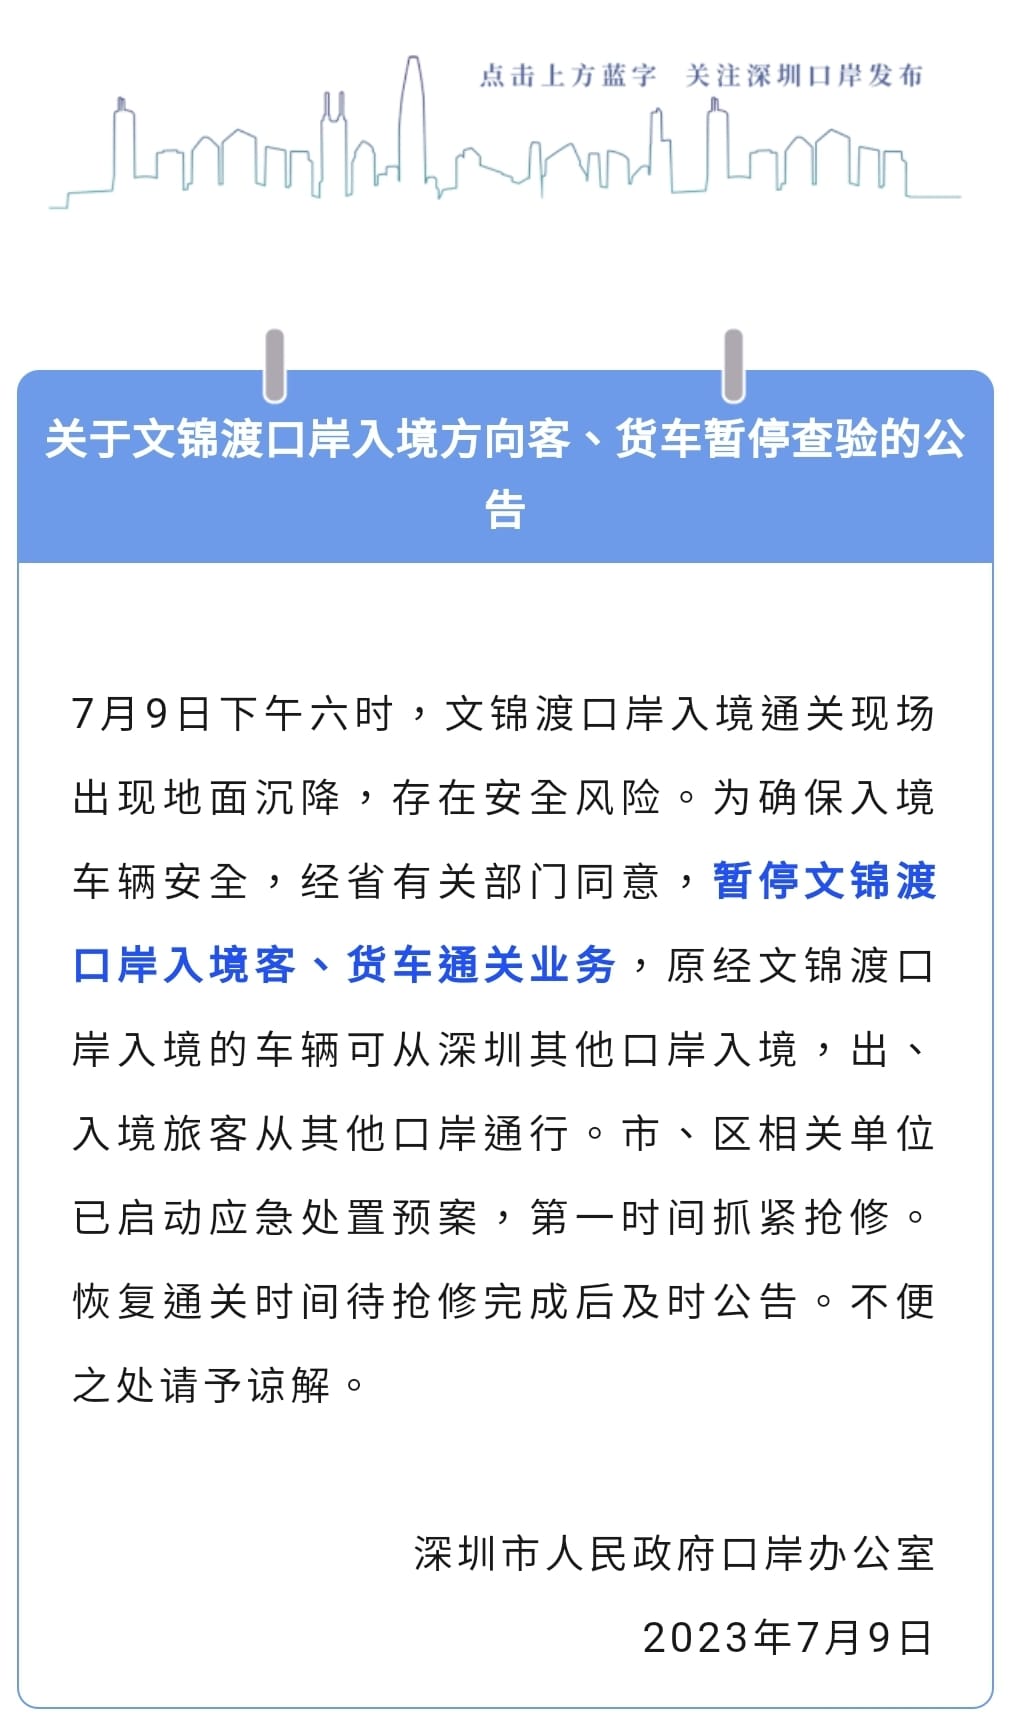 深圳市政府通告。